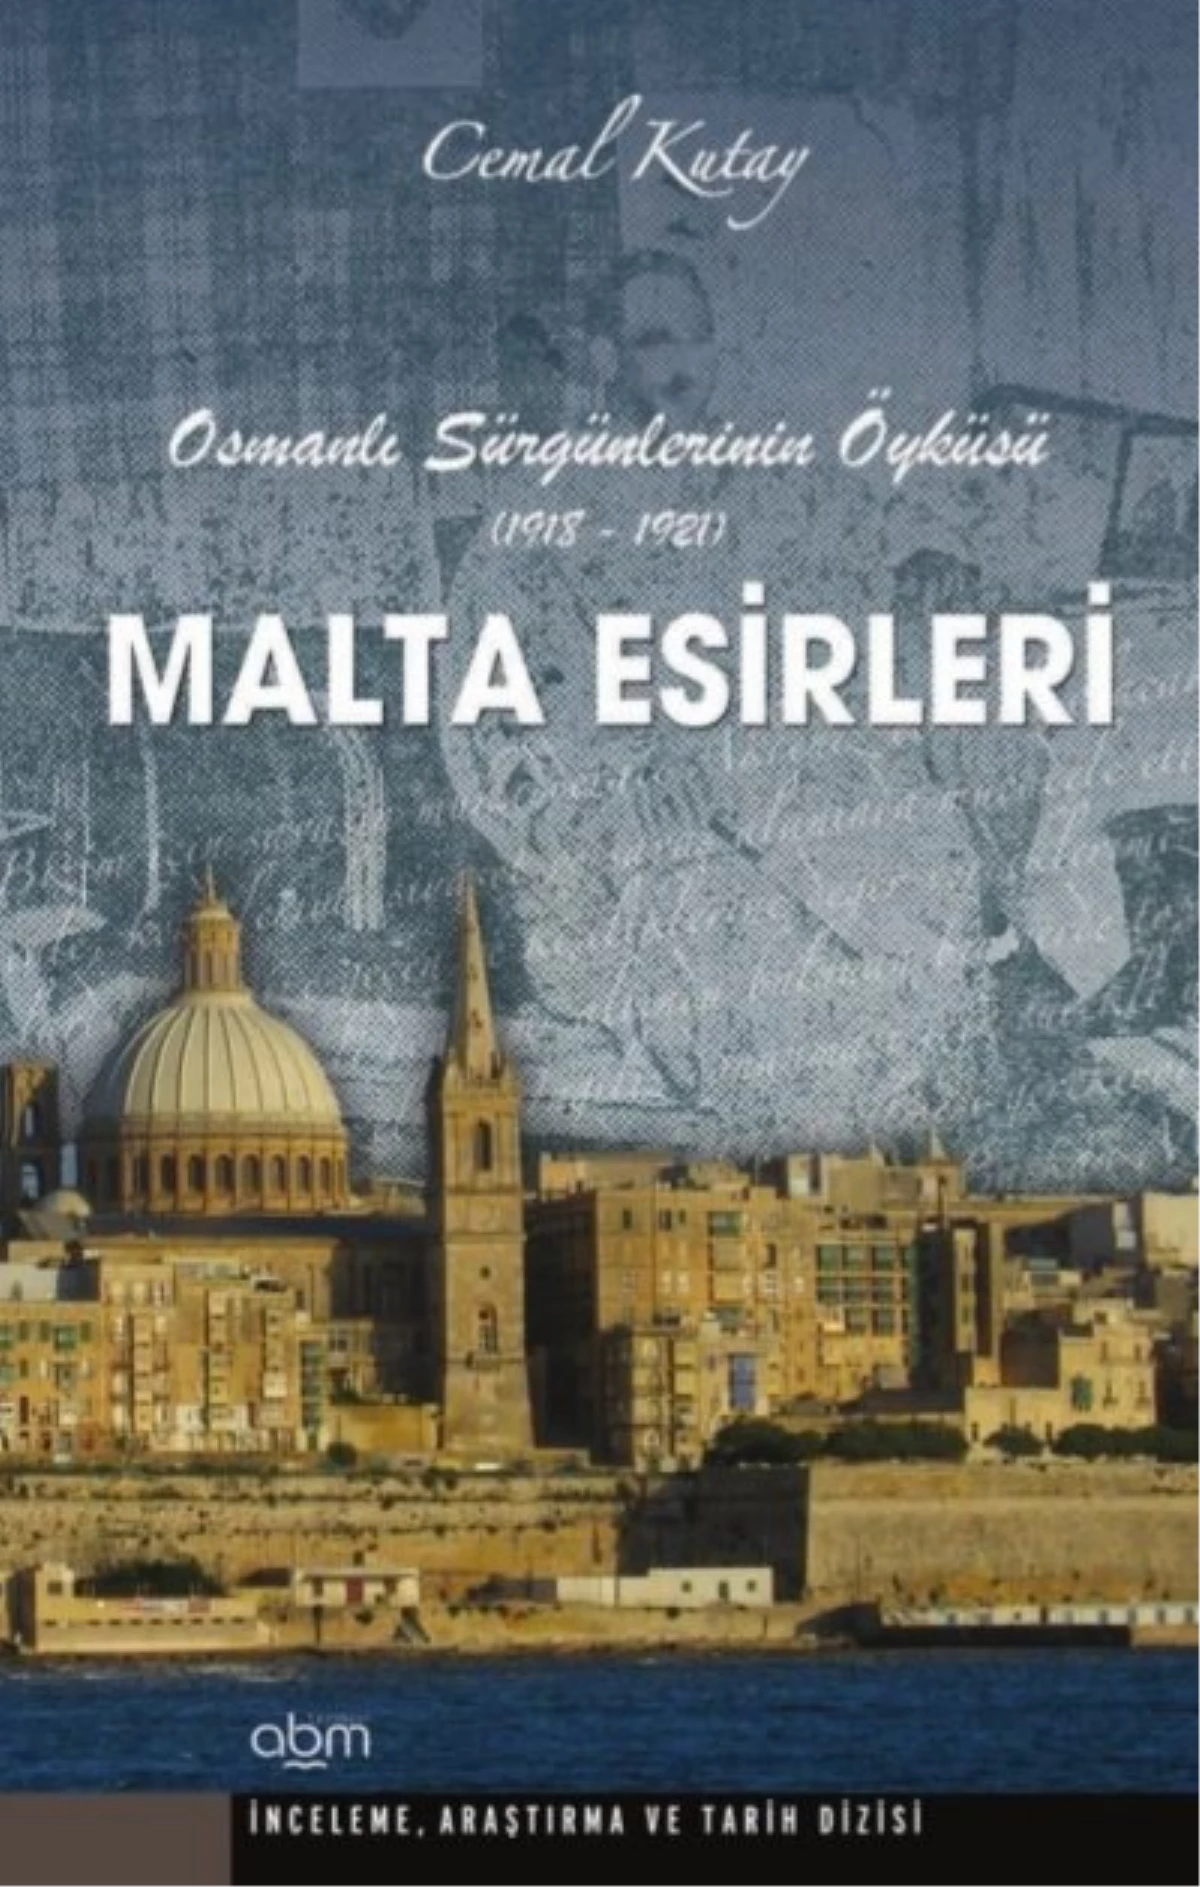 Cemal Kutay\'ın Kaleminden: "Malta Esirleri"